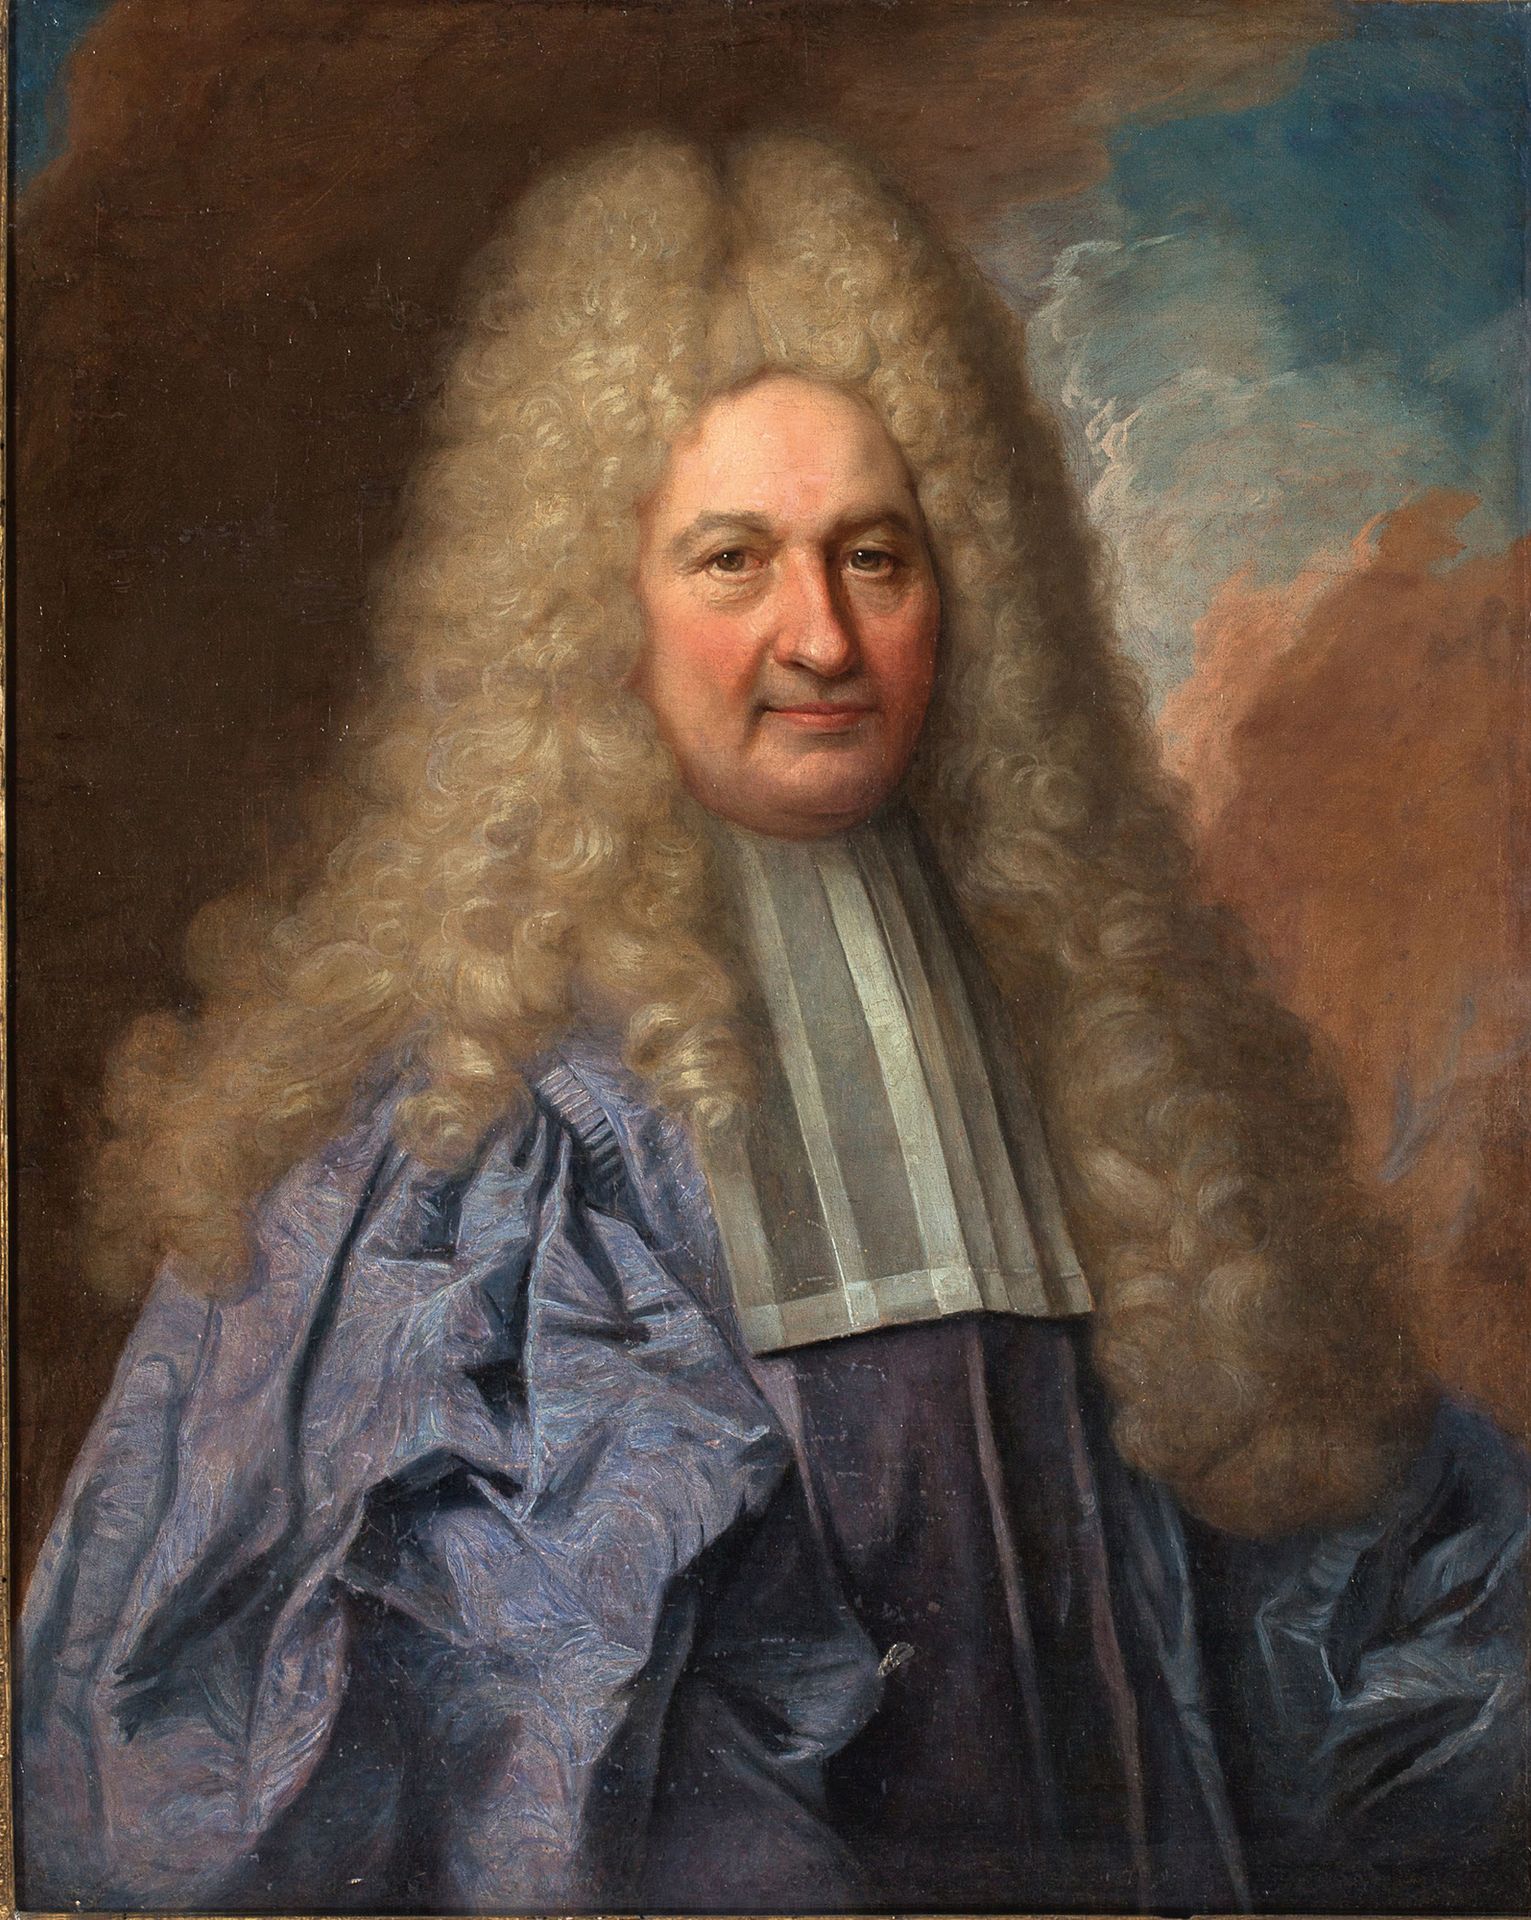 ATTRIBUÉ À NICOLAS DE LARGILLIERE PARIS, 1656 - 1746 一个人的肖像
布面油画
81 x 64,5 cm